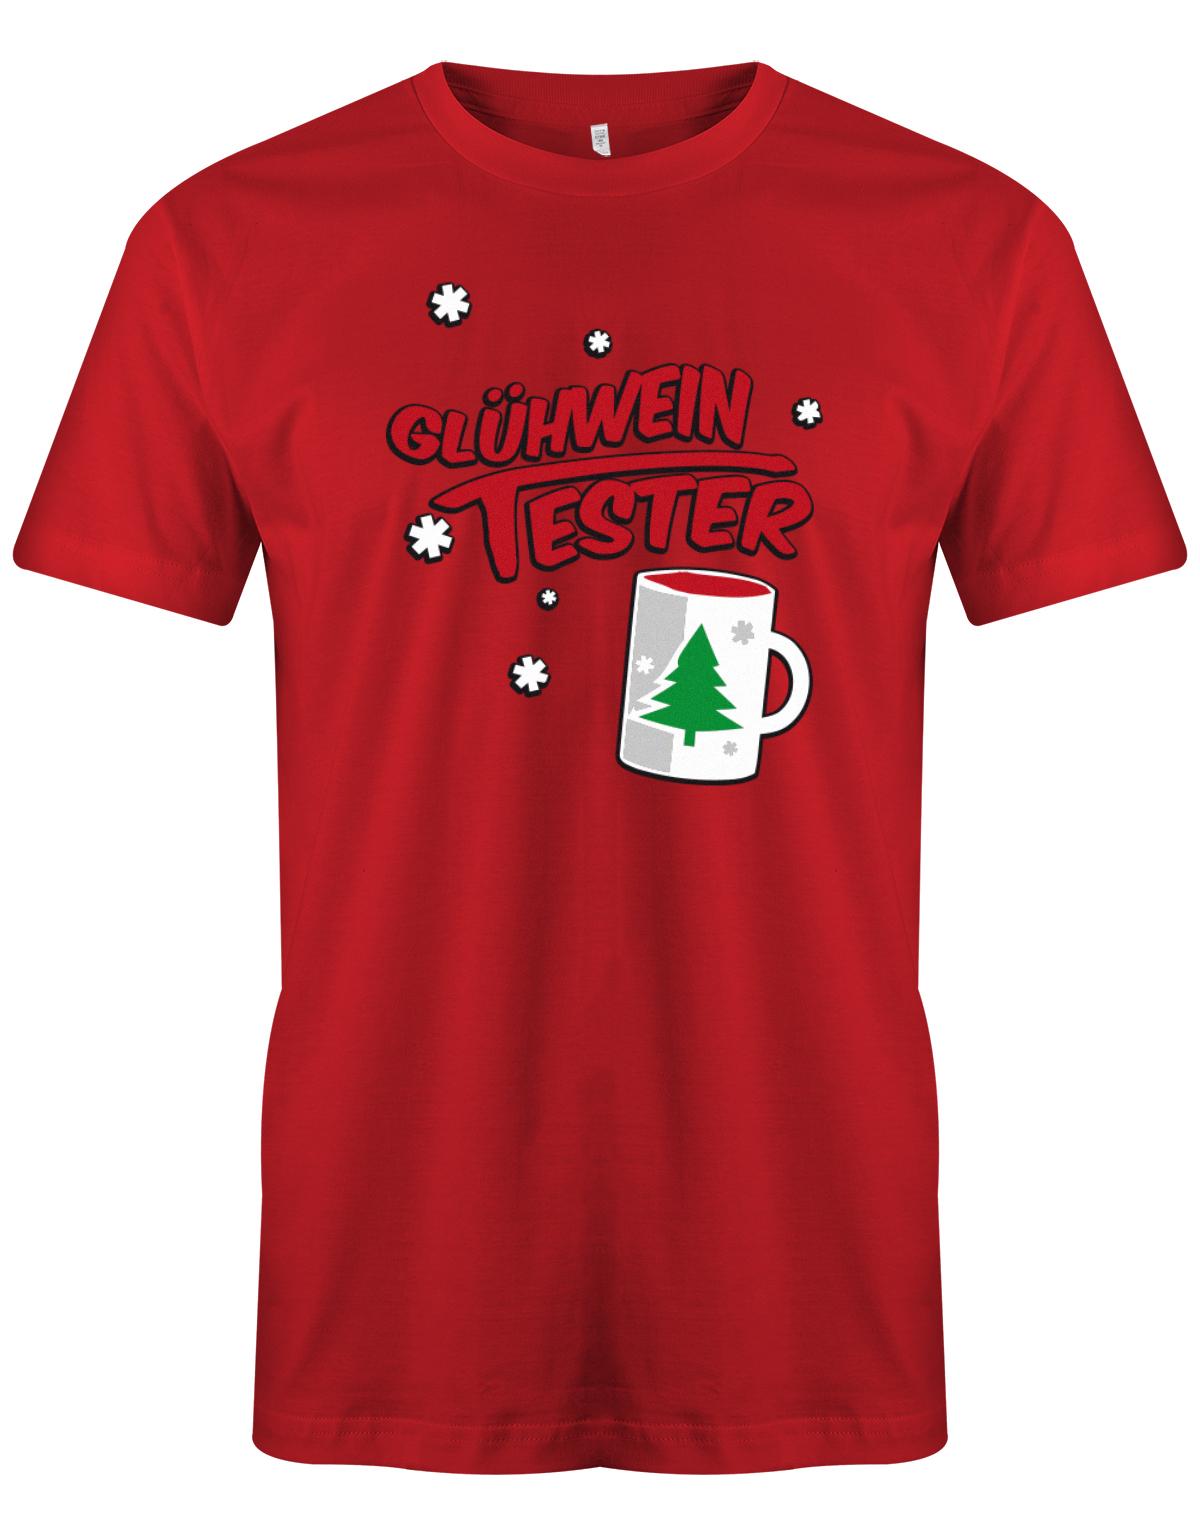 Gl-hwein-tester-Weihnachten-Shirt-Herren-Rot